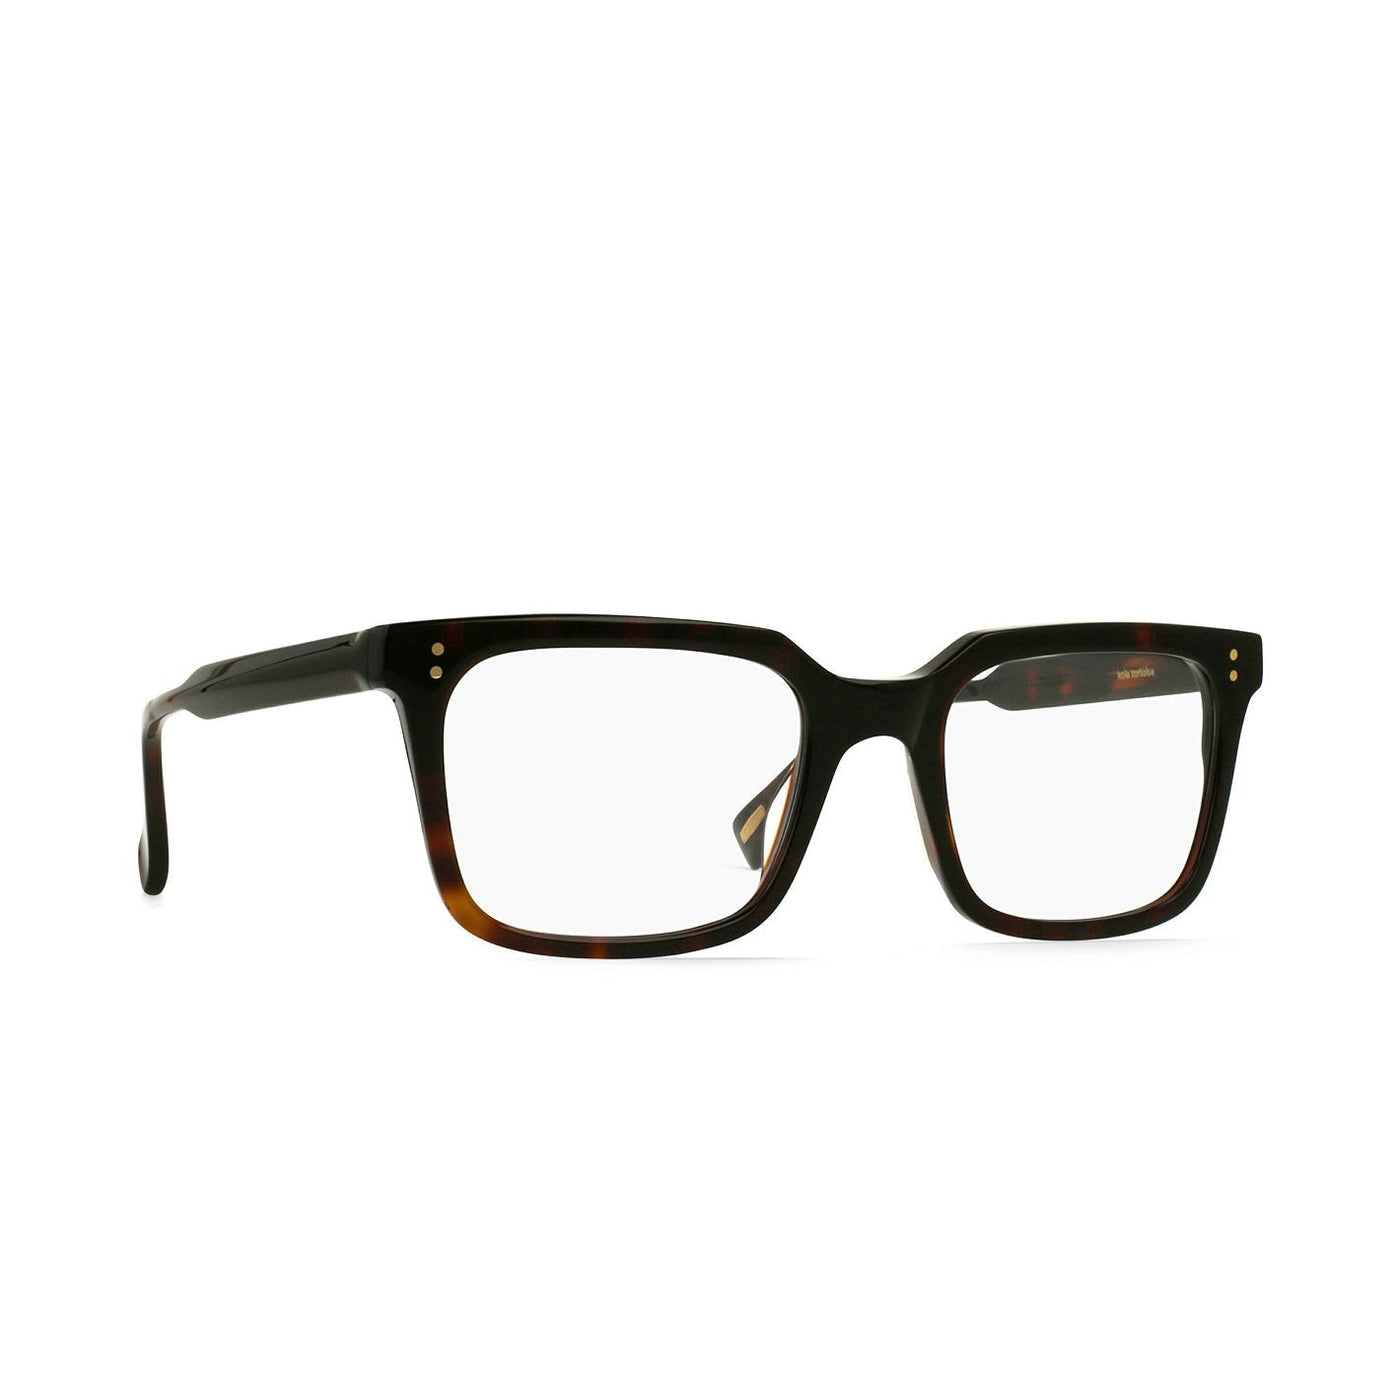 Raen Reading Glasses - Lens & Frame Co.